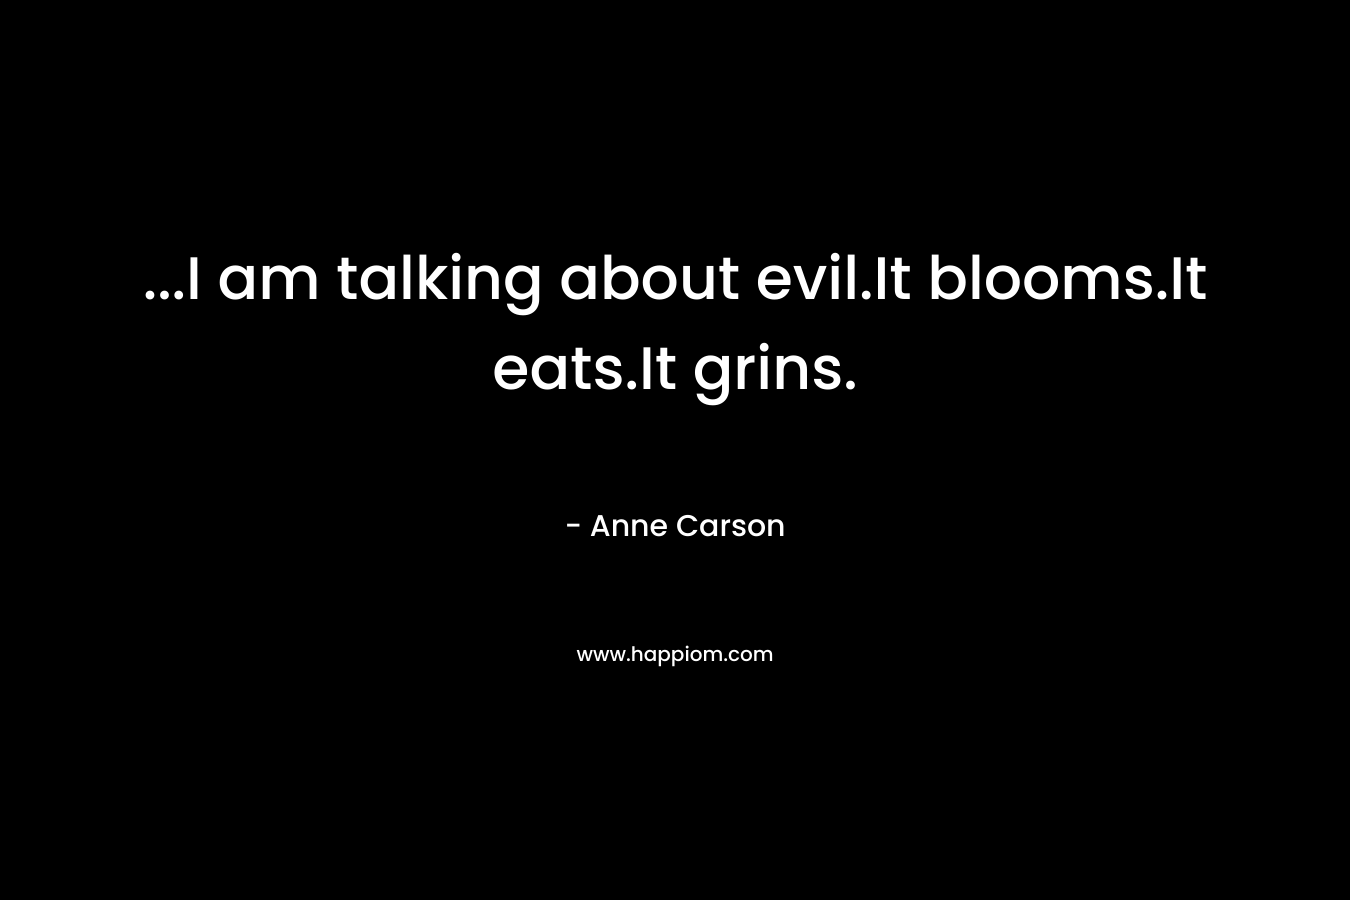 ...I am talking about evil.It blooms.It eats.It grins.